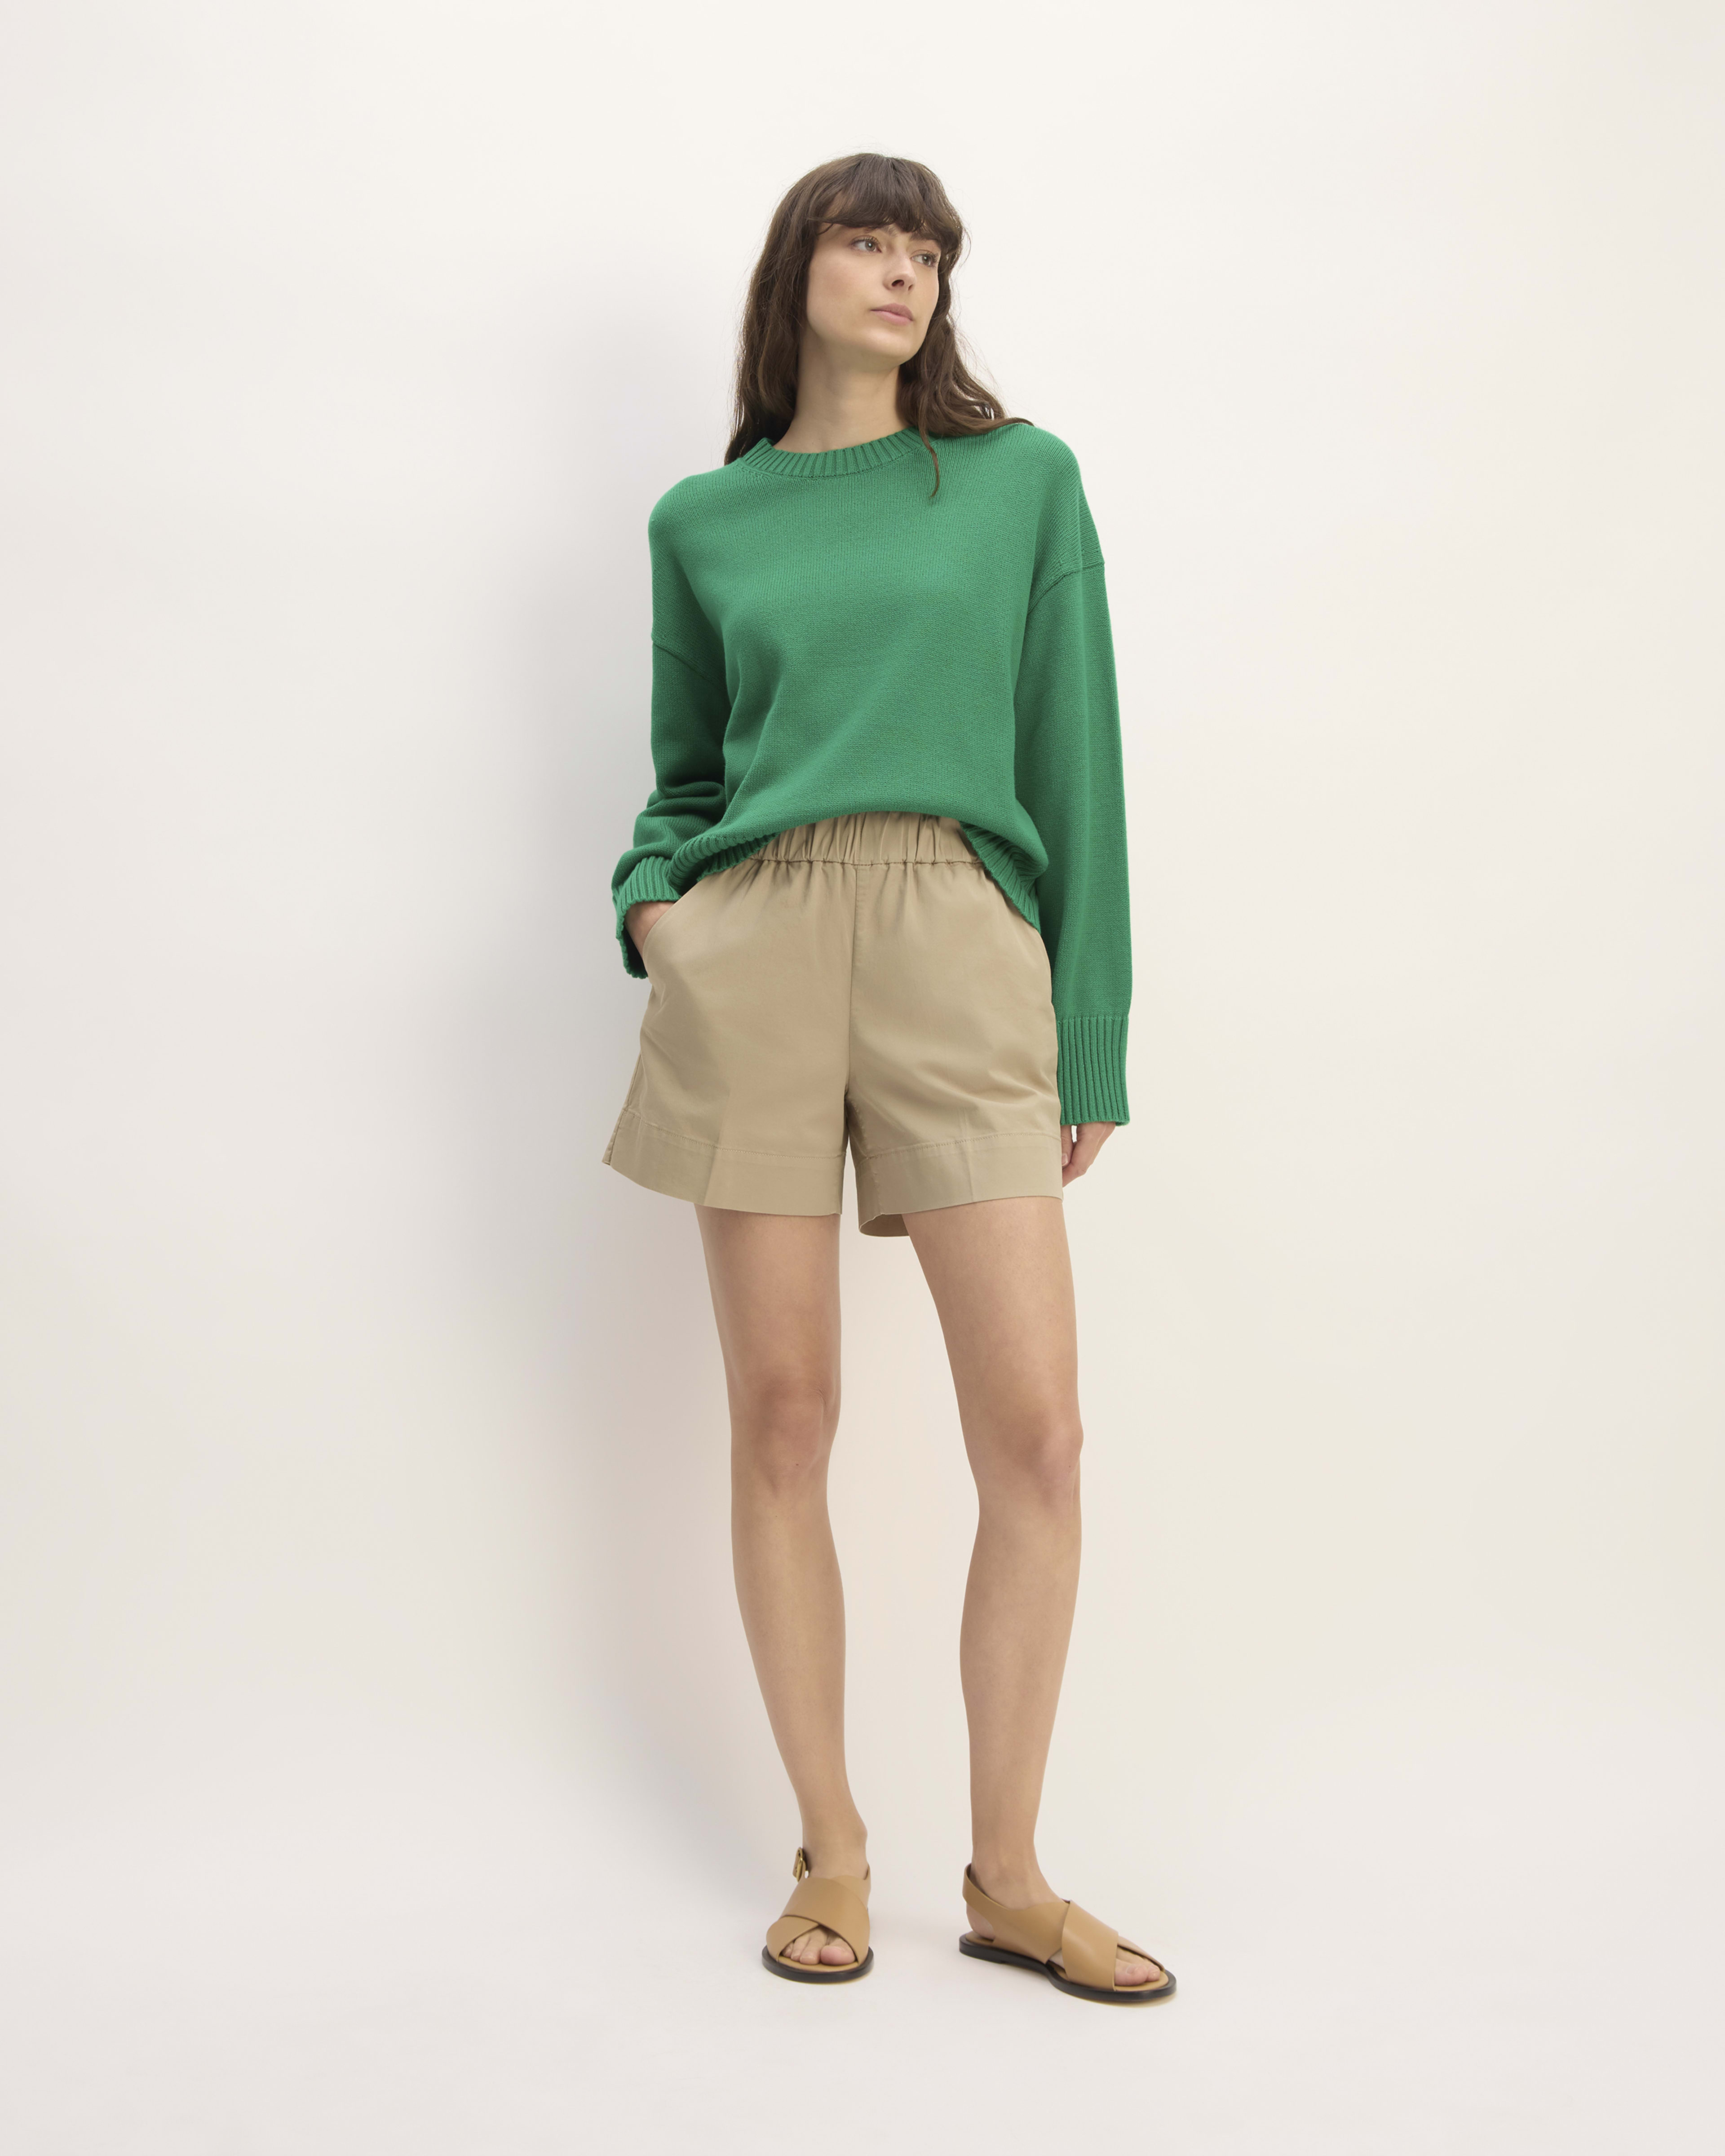 Women's Shorts & Skirts – Everlane